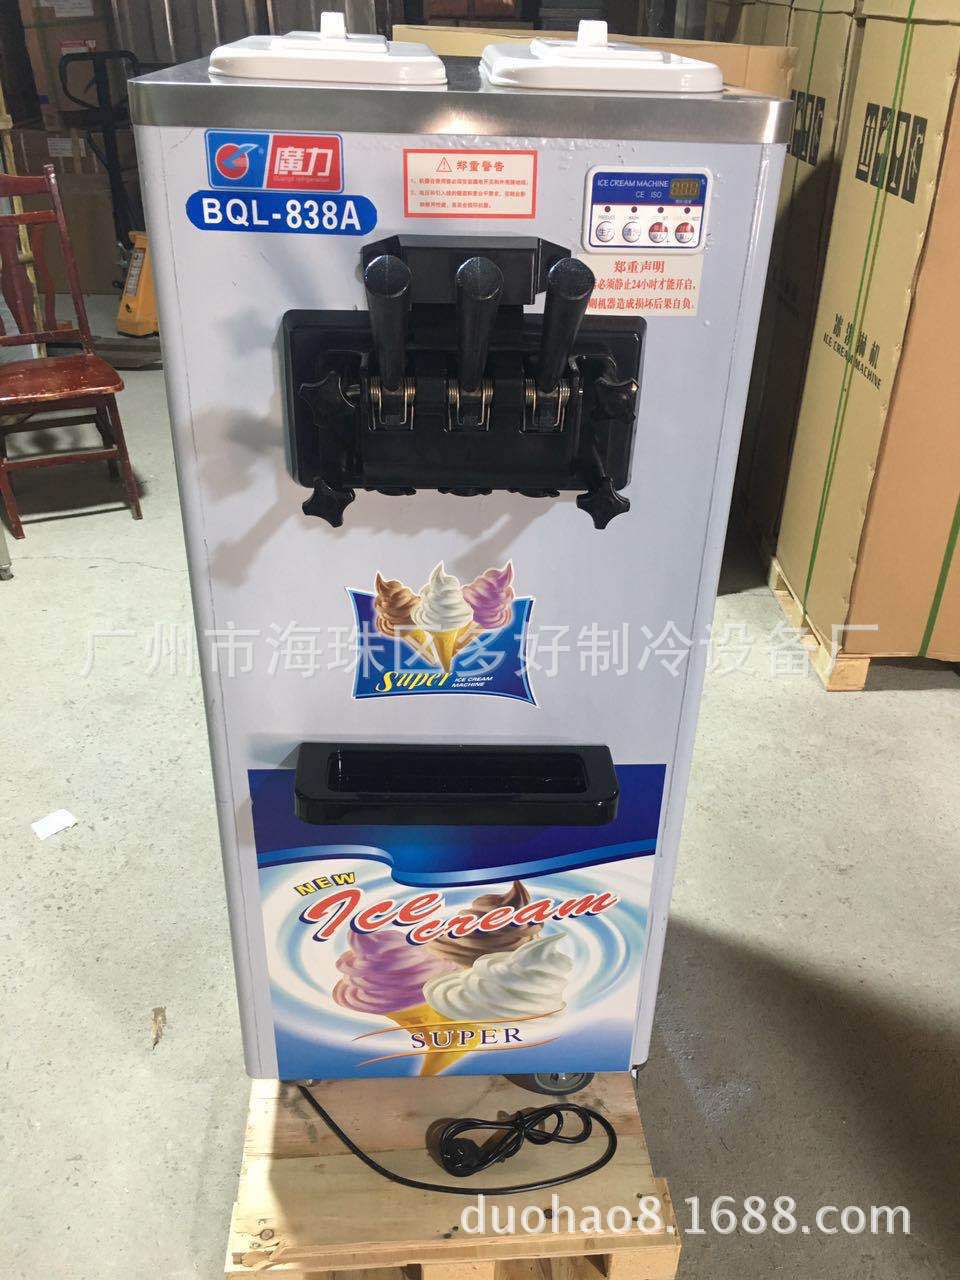 厂家直销三色软冰淇淋机冰激淋机BQL-838A最新款高性价比示例图1